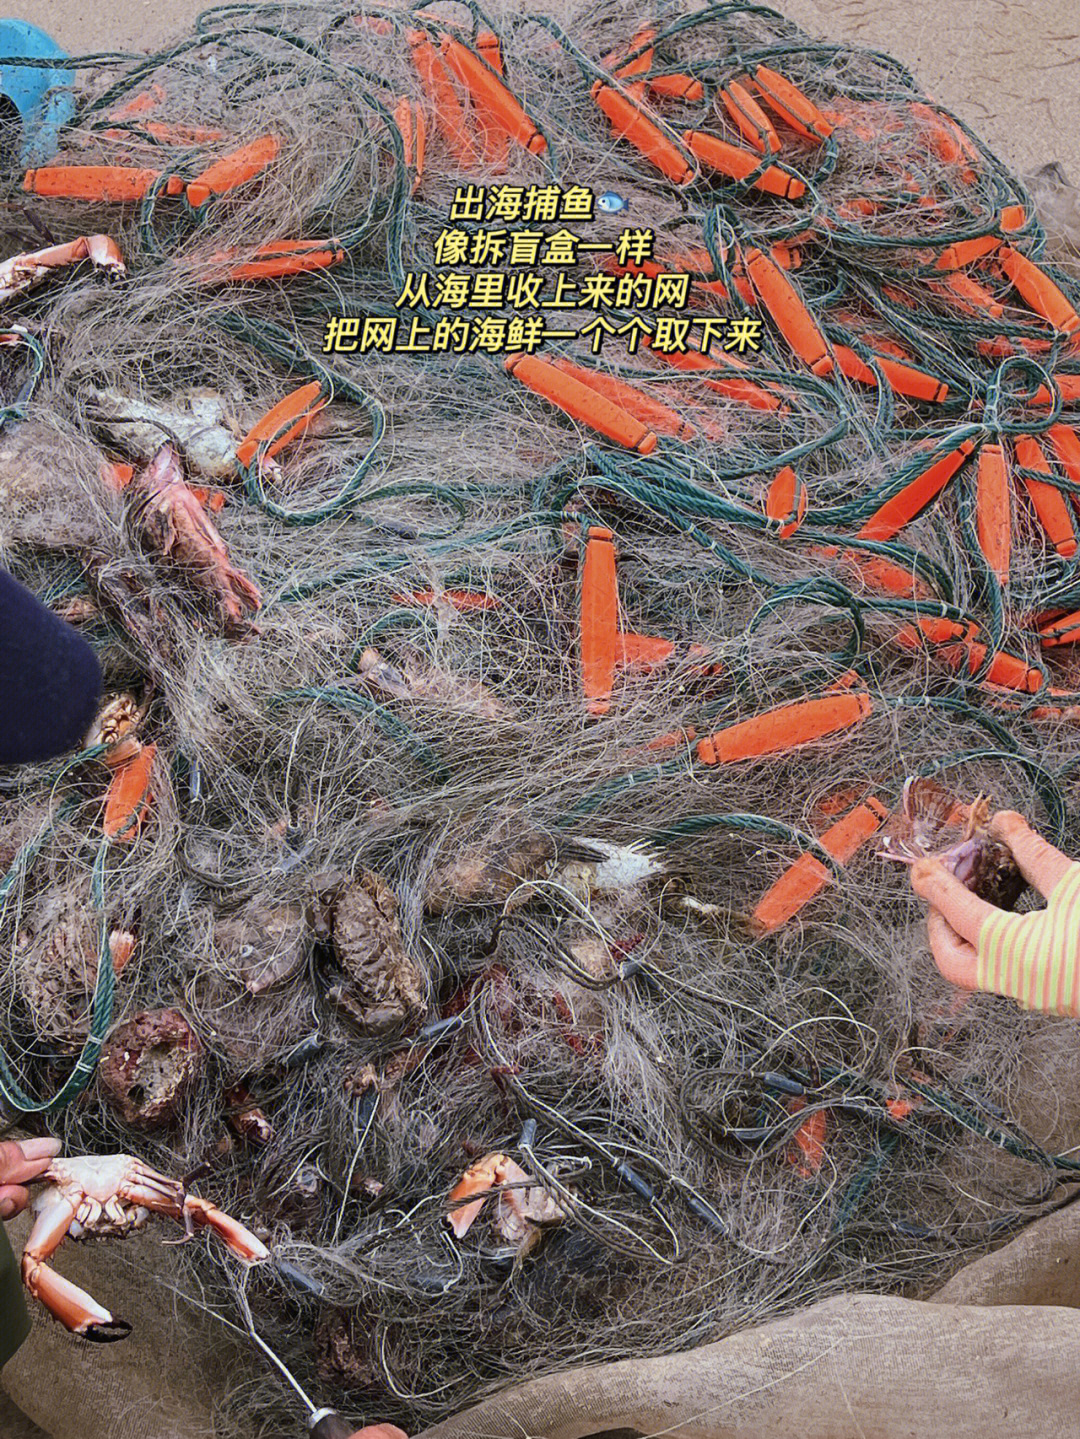 渔民一起收网 拆网住的海鲜这次收获有螃蟹 剥皮鱼 小石斑 泥猛鱼